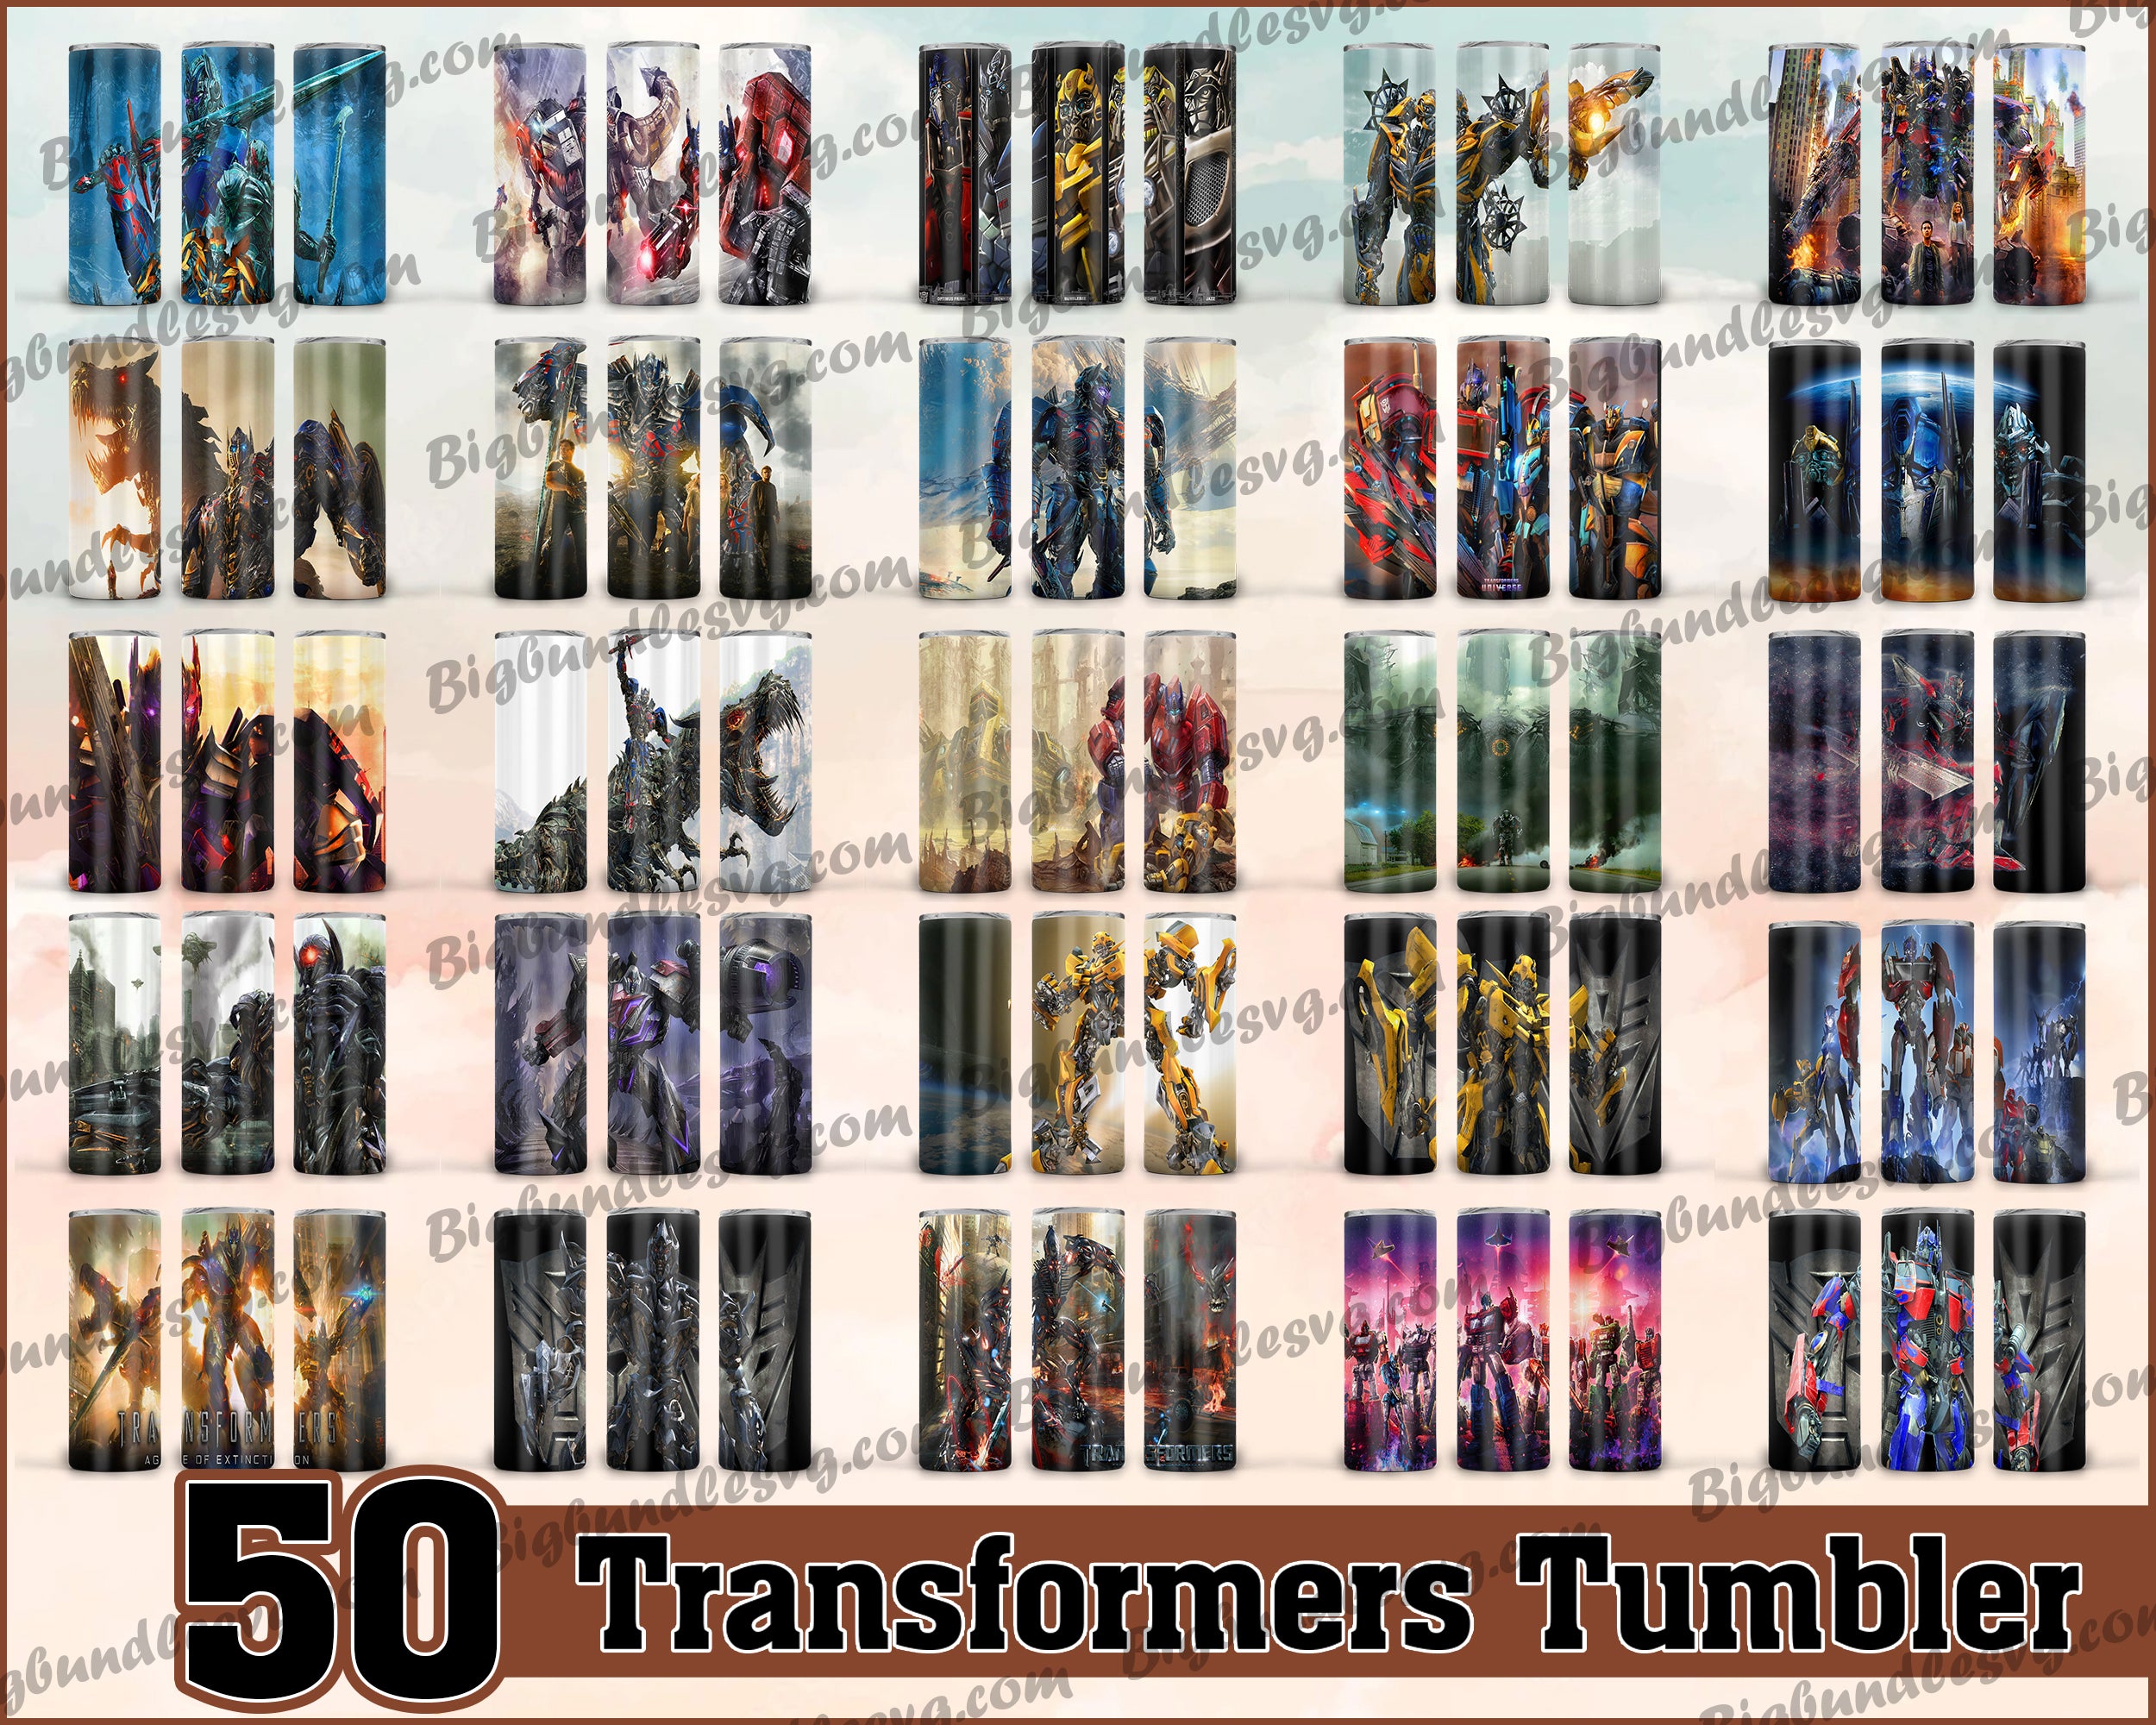 Transformers Tumbler - Transformers PNG - Tumbler design - Digital download